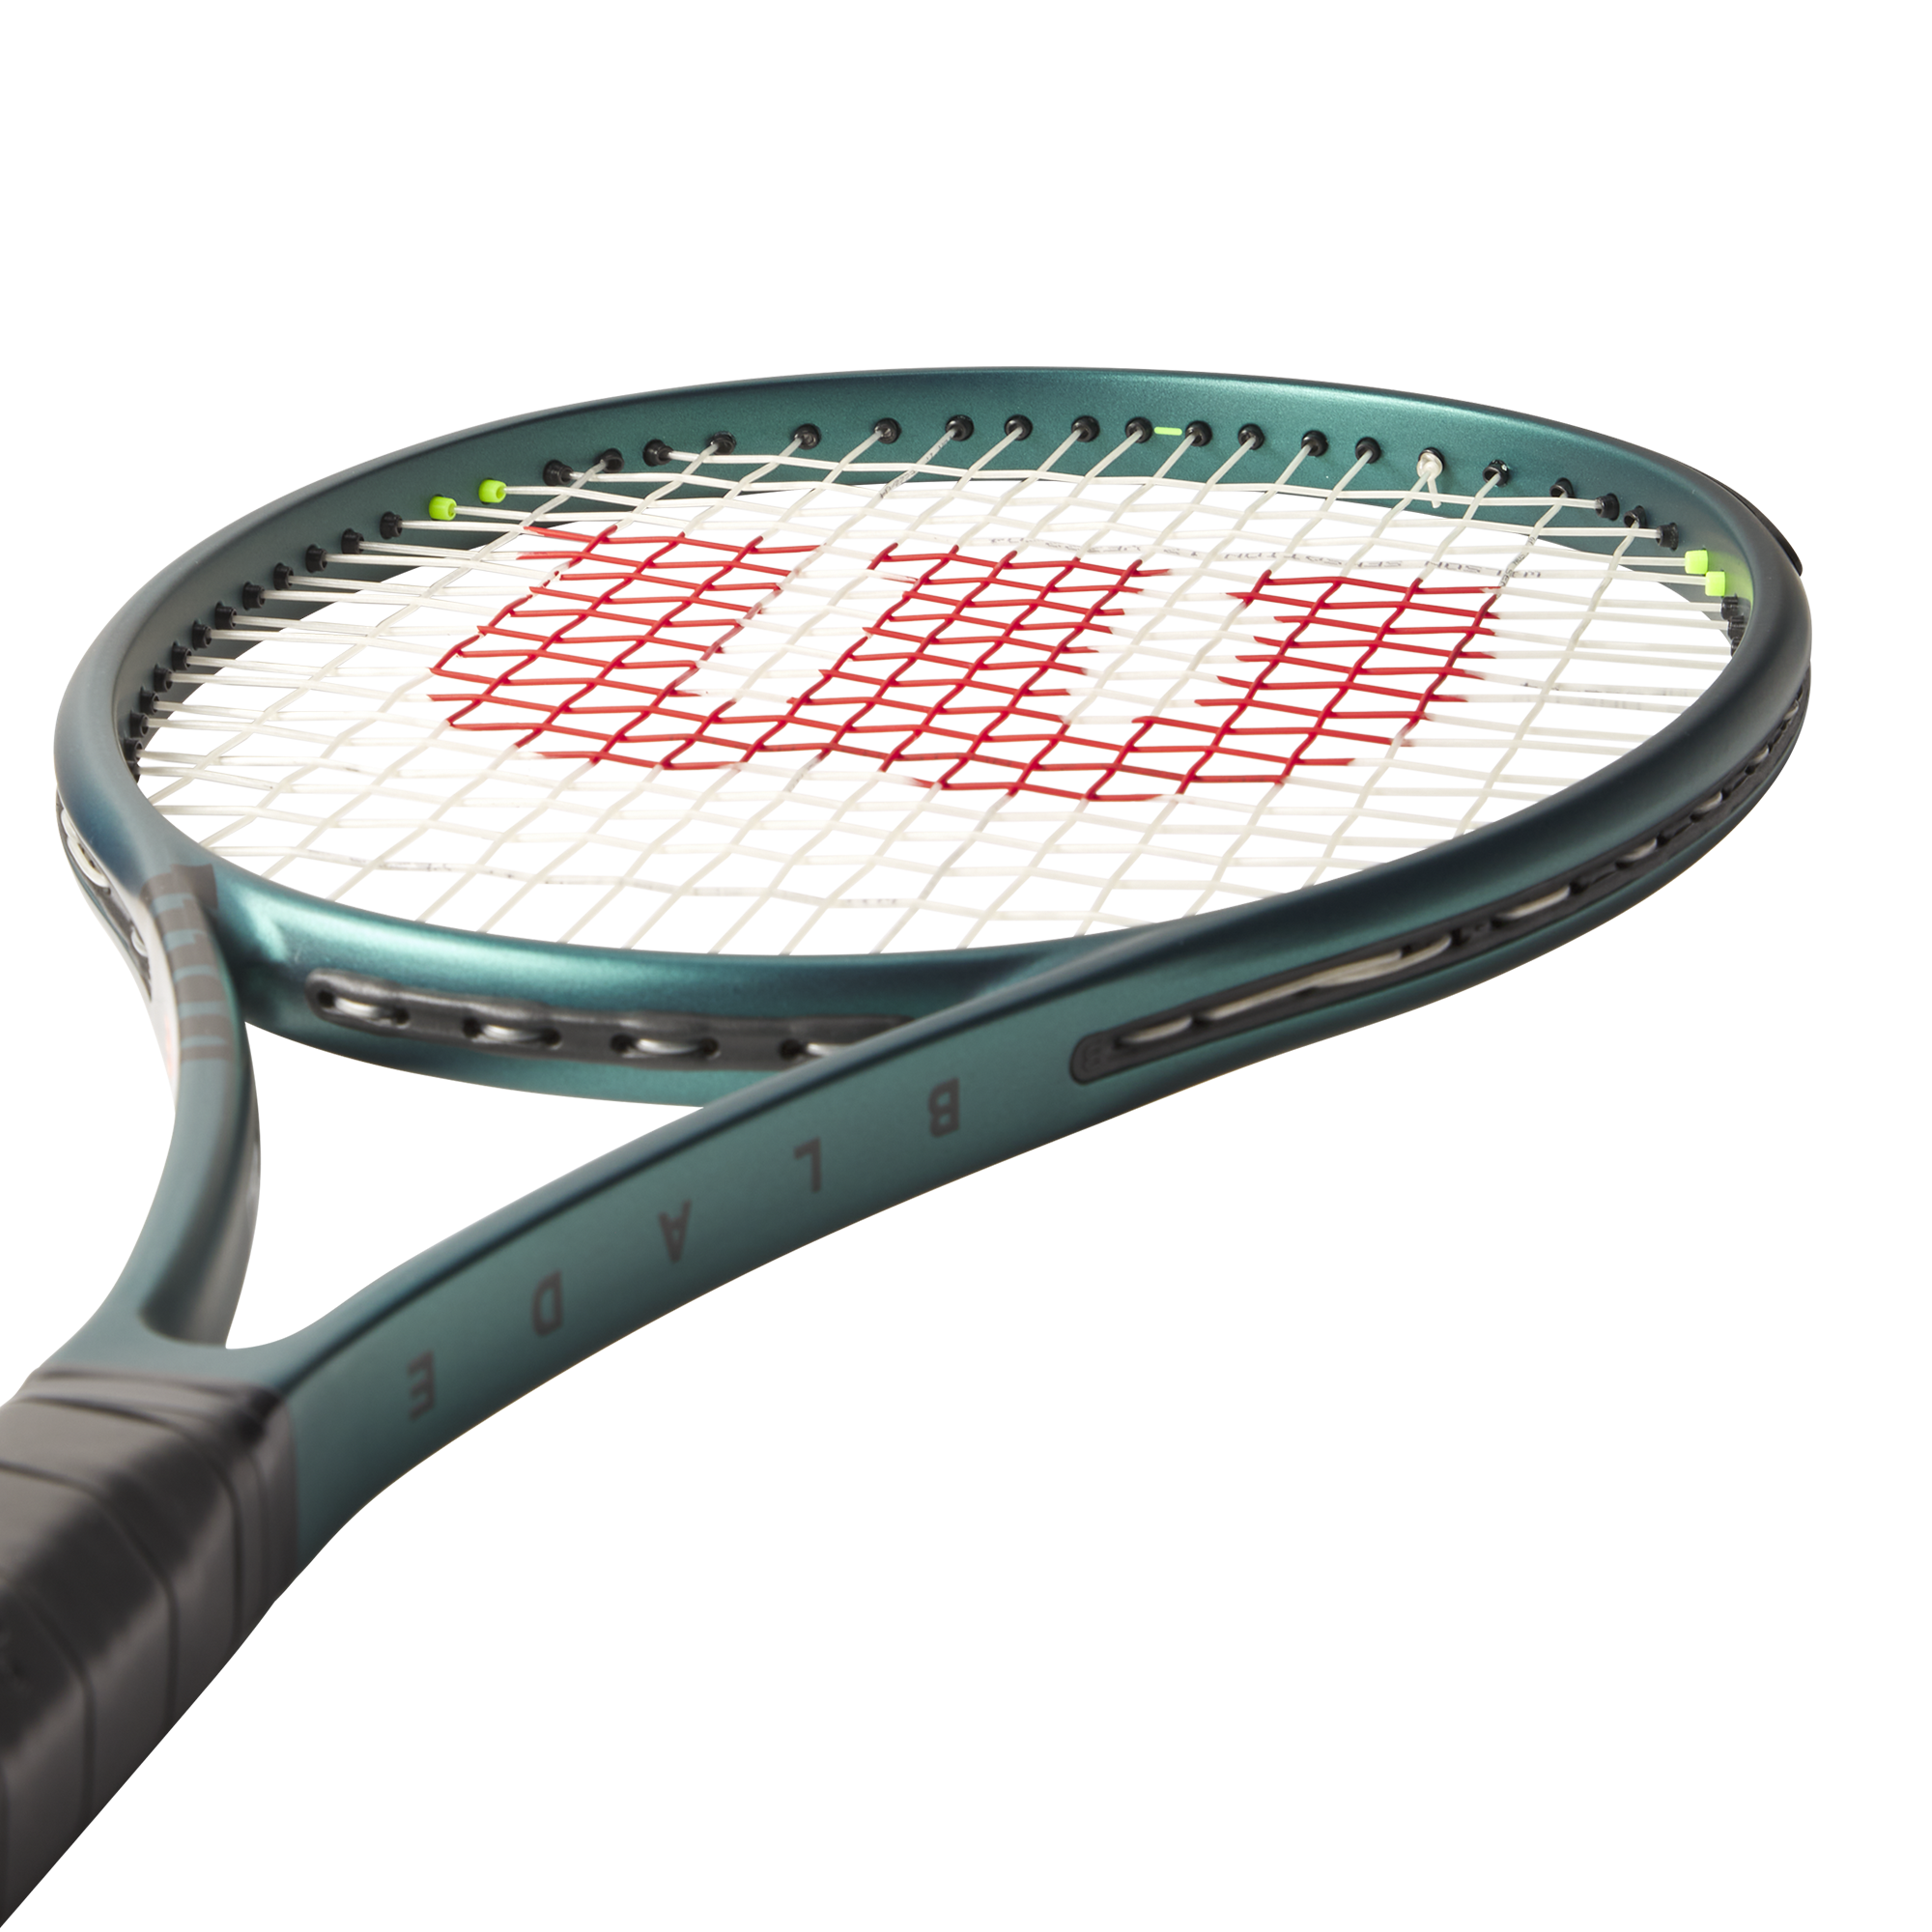 Wilson Blade 98 16X19 V9 Tennis Racquet